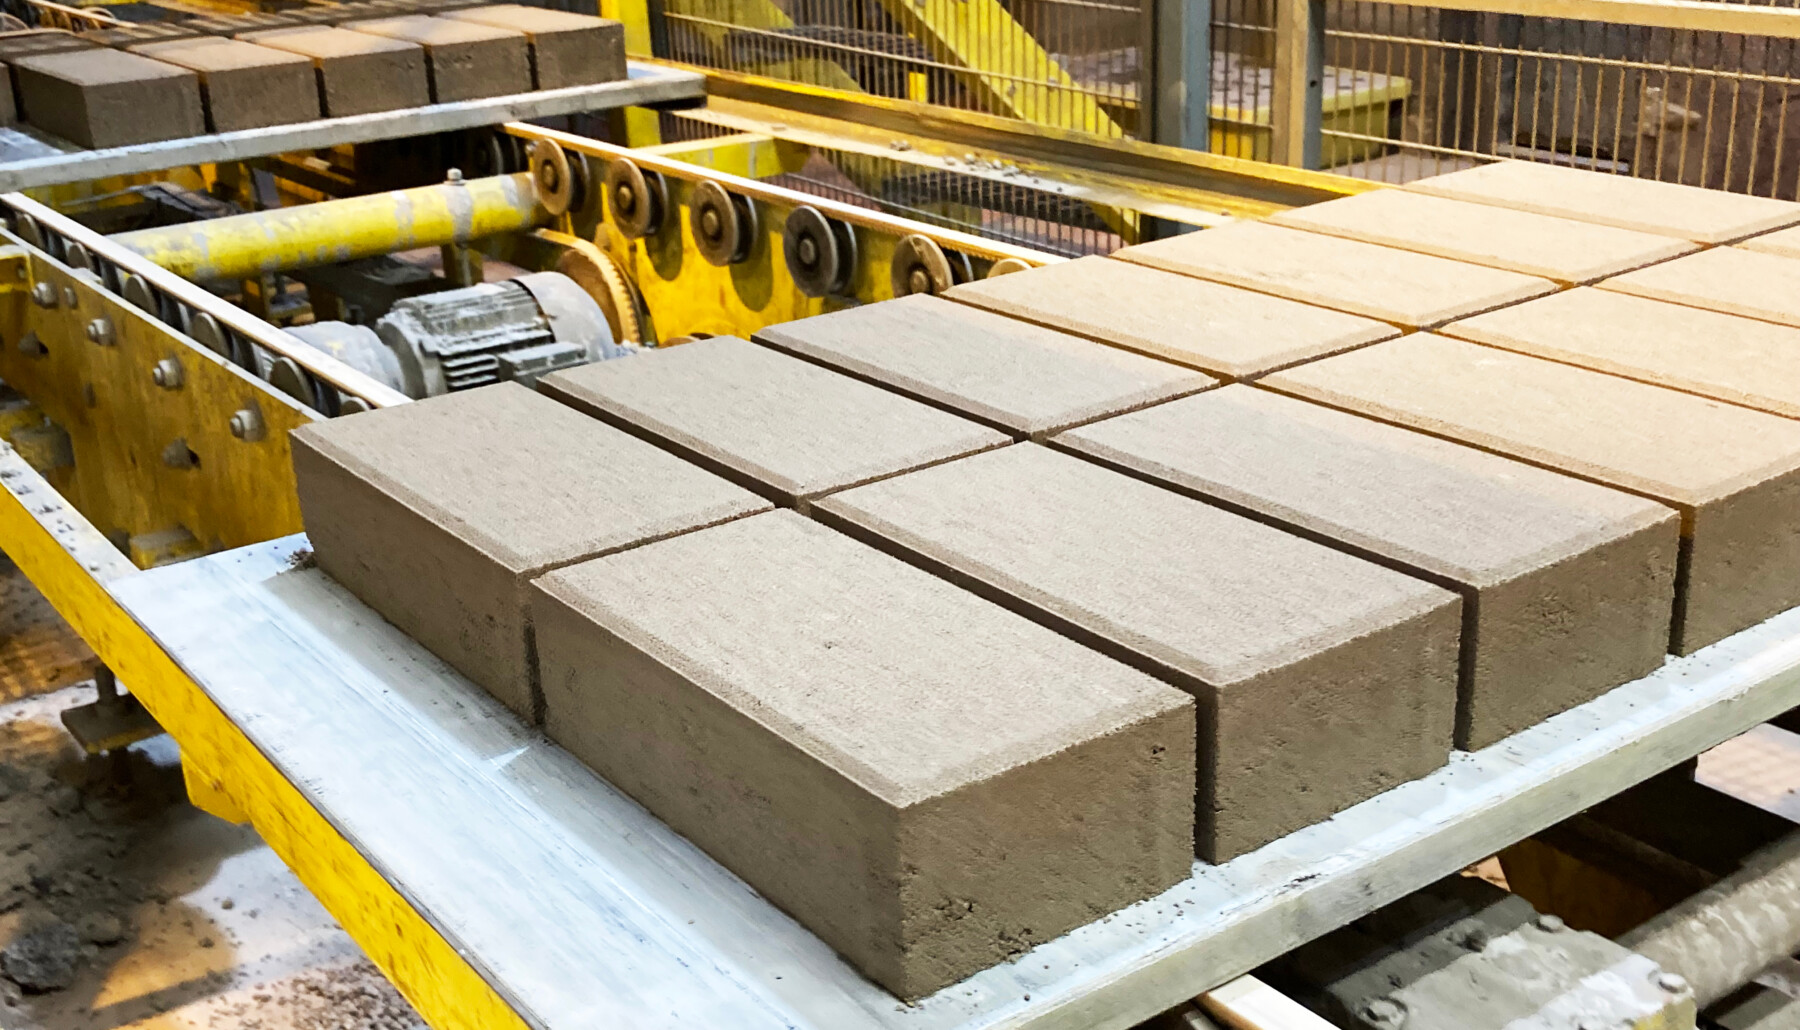 Dans une usine, plusieurs rangées de briques rectangulaires sont en train d’avancer sur la bande transporteuse d’une chaîne de production.